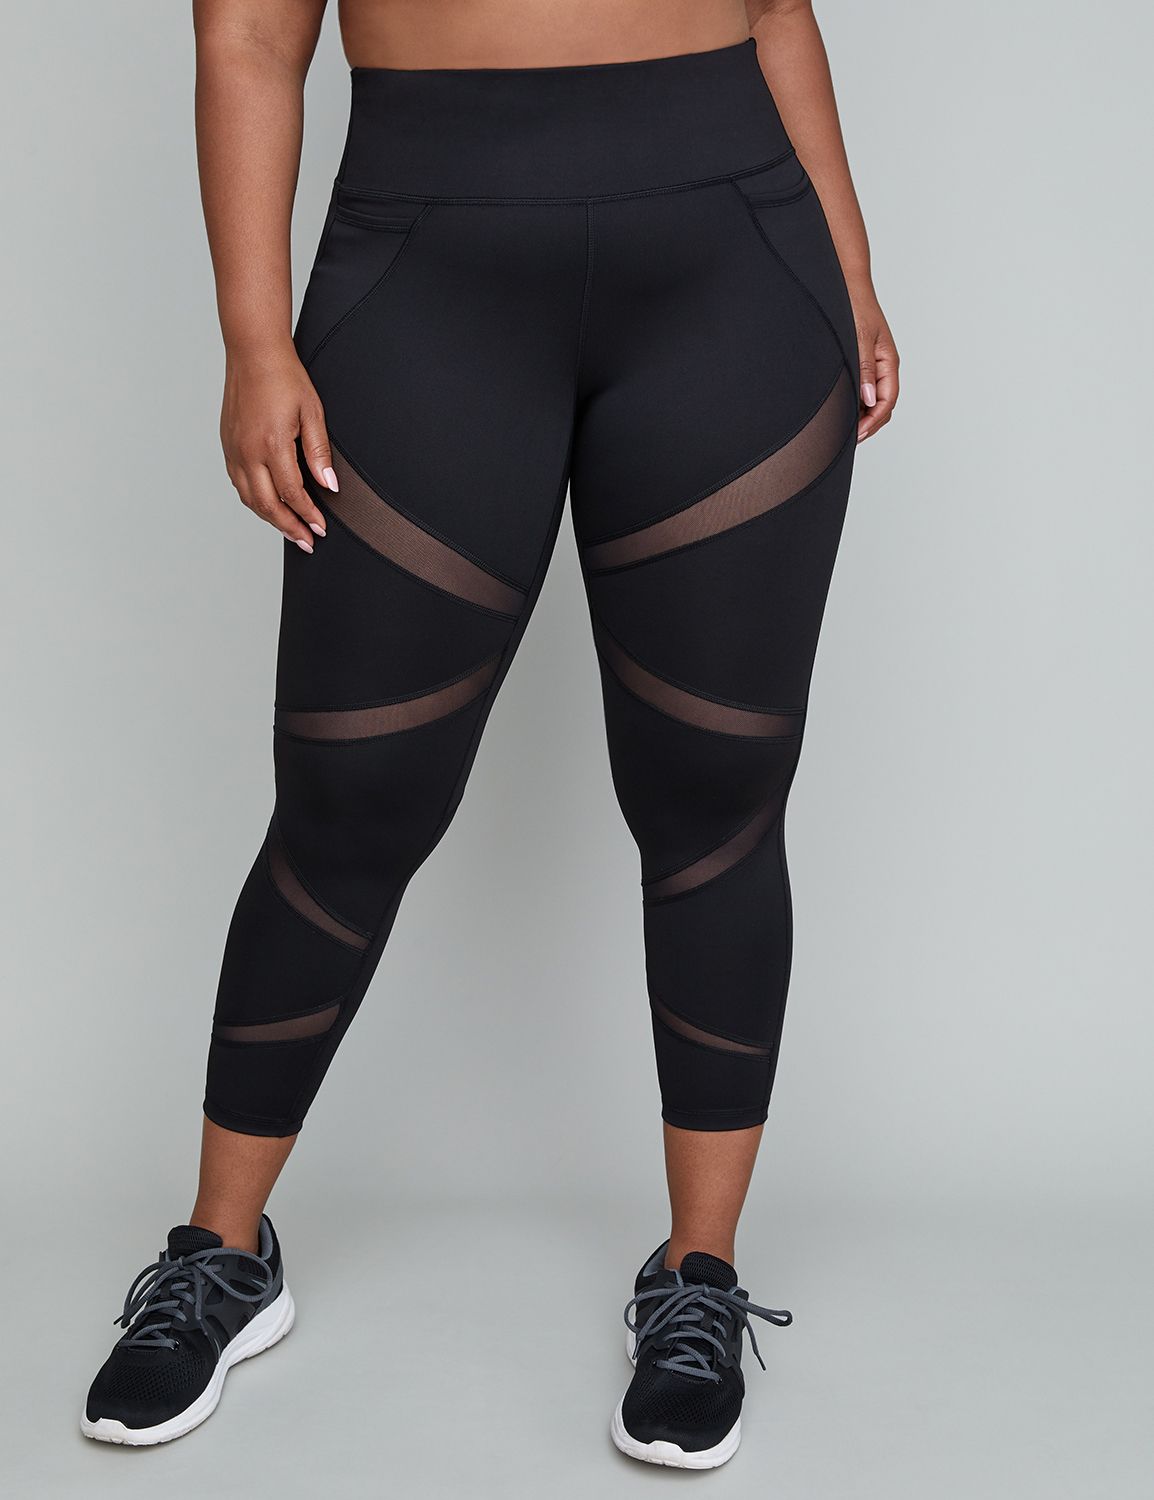 Plus Size Livi Active Workout Pants | Lane Bryant